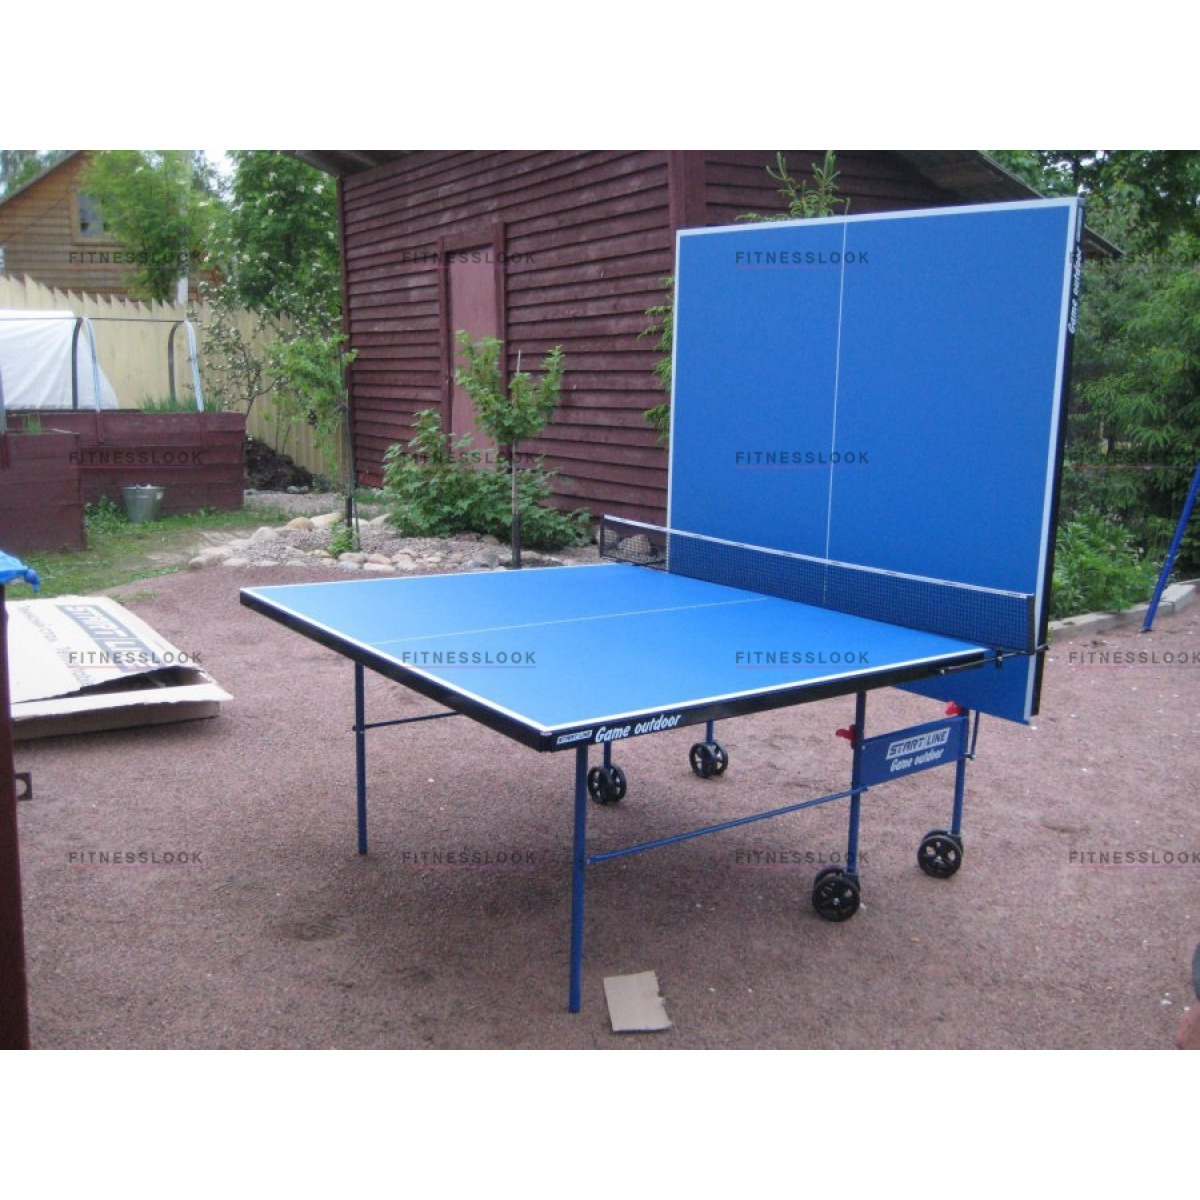 стол для настольного тенниса start line game outdoor